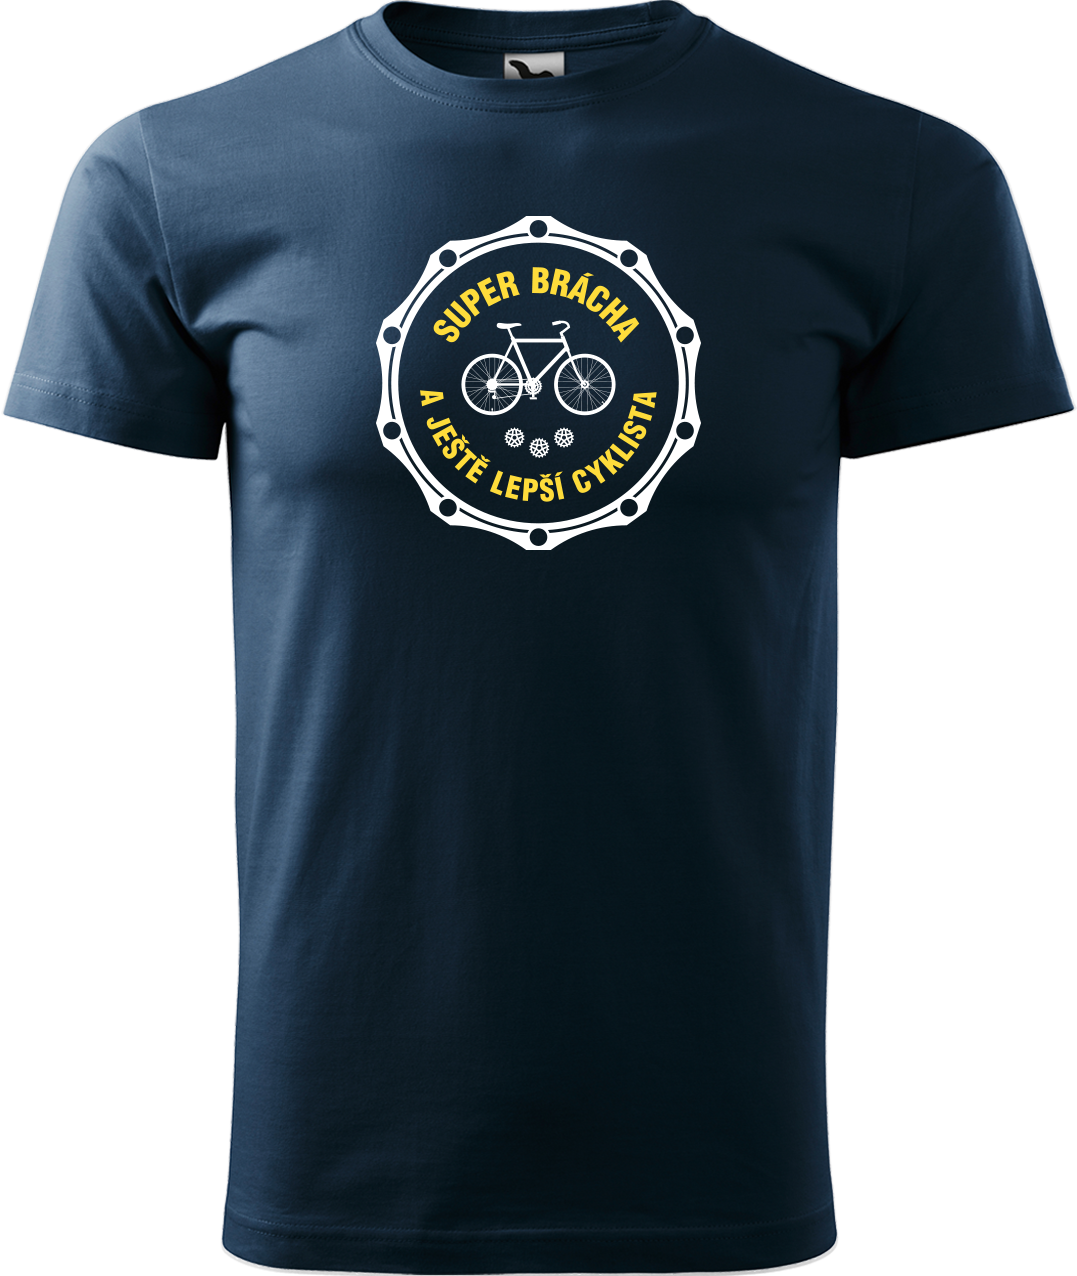 Pánské tričko pro cyklistu - Super brácha a ještě lepší cyklista Velikost: S, Barva: Námořní modrá (02)